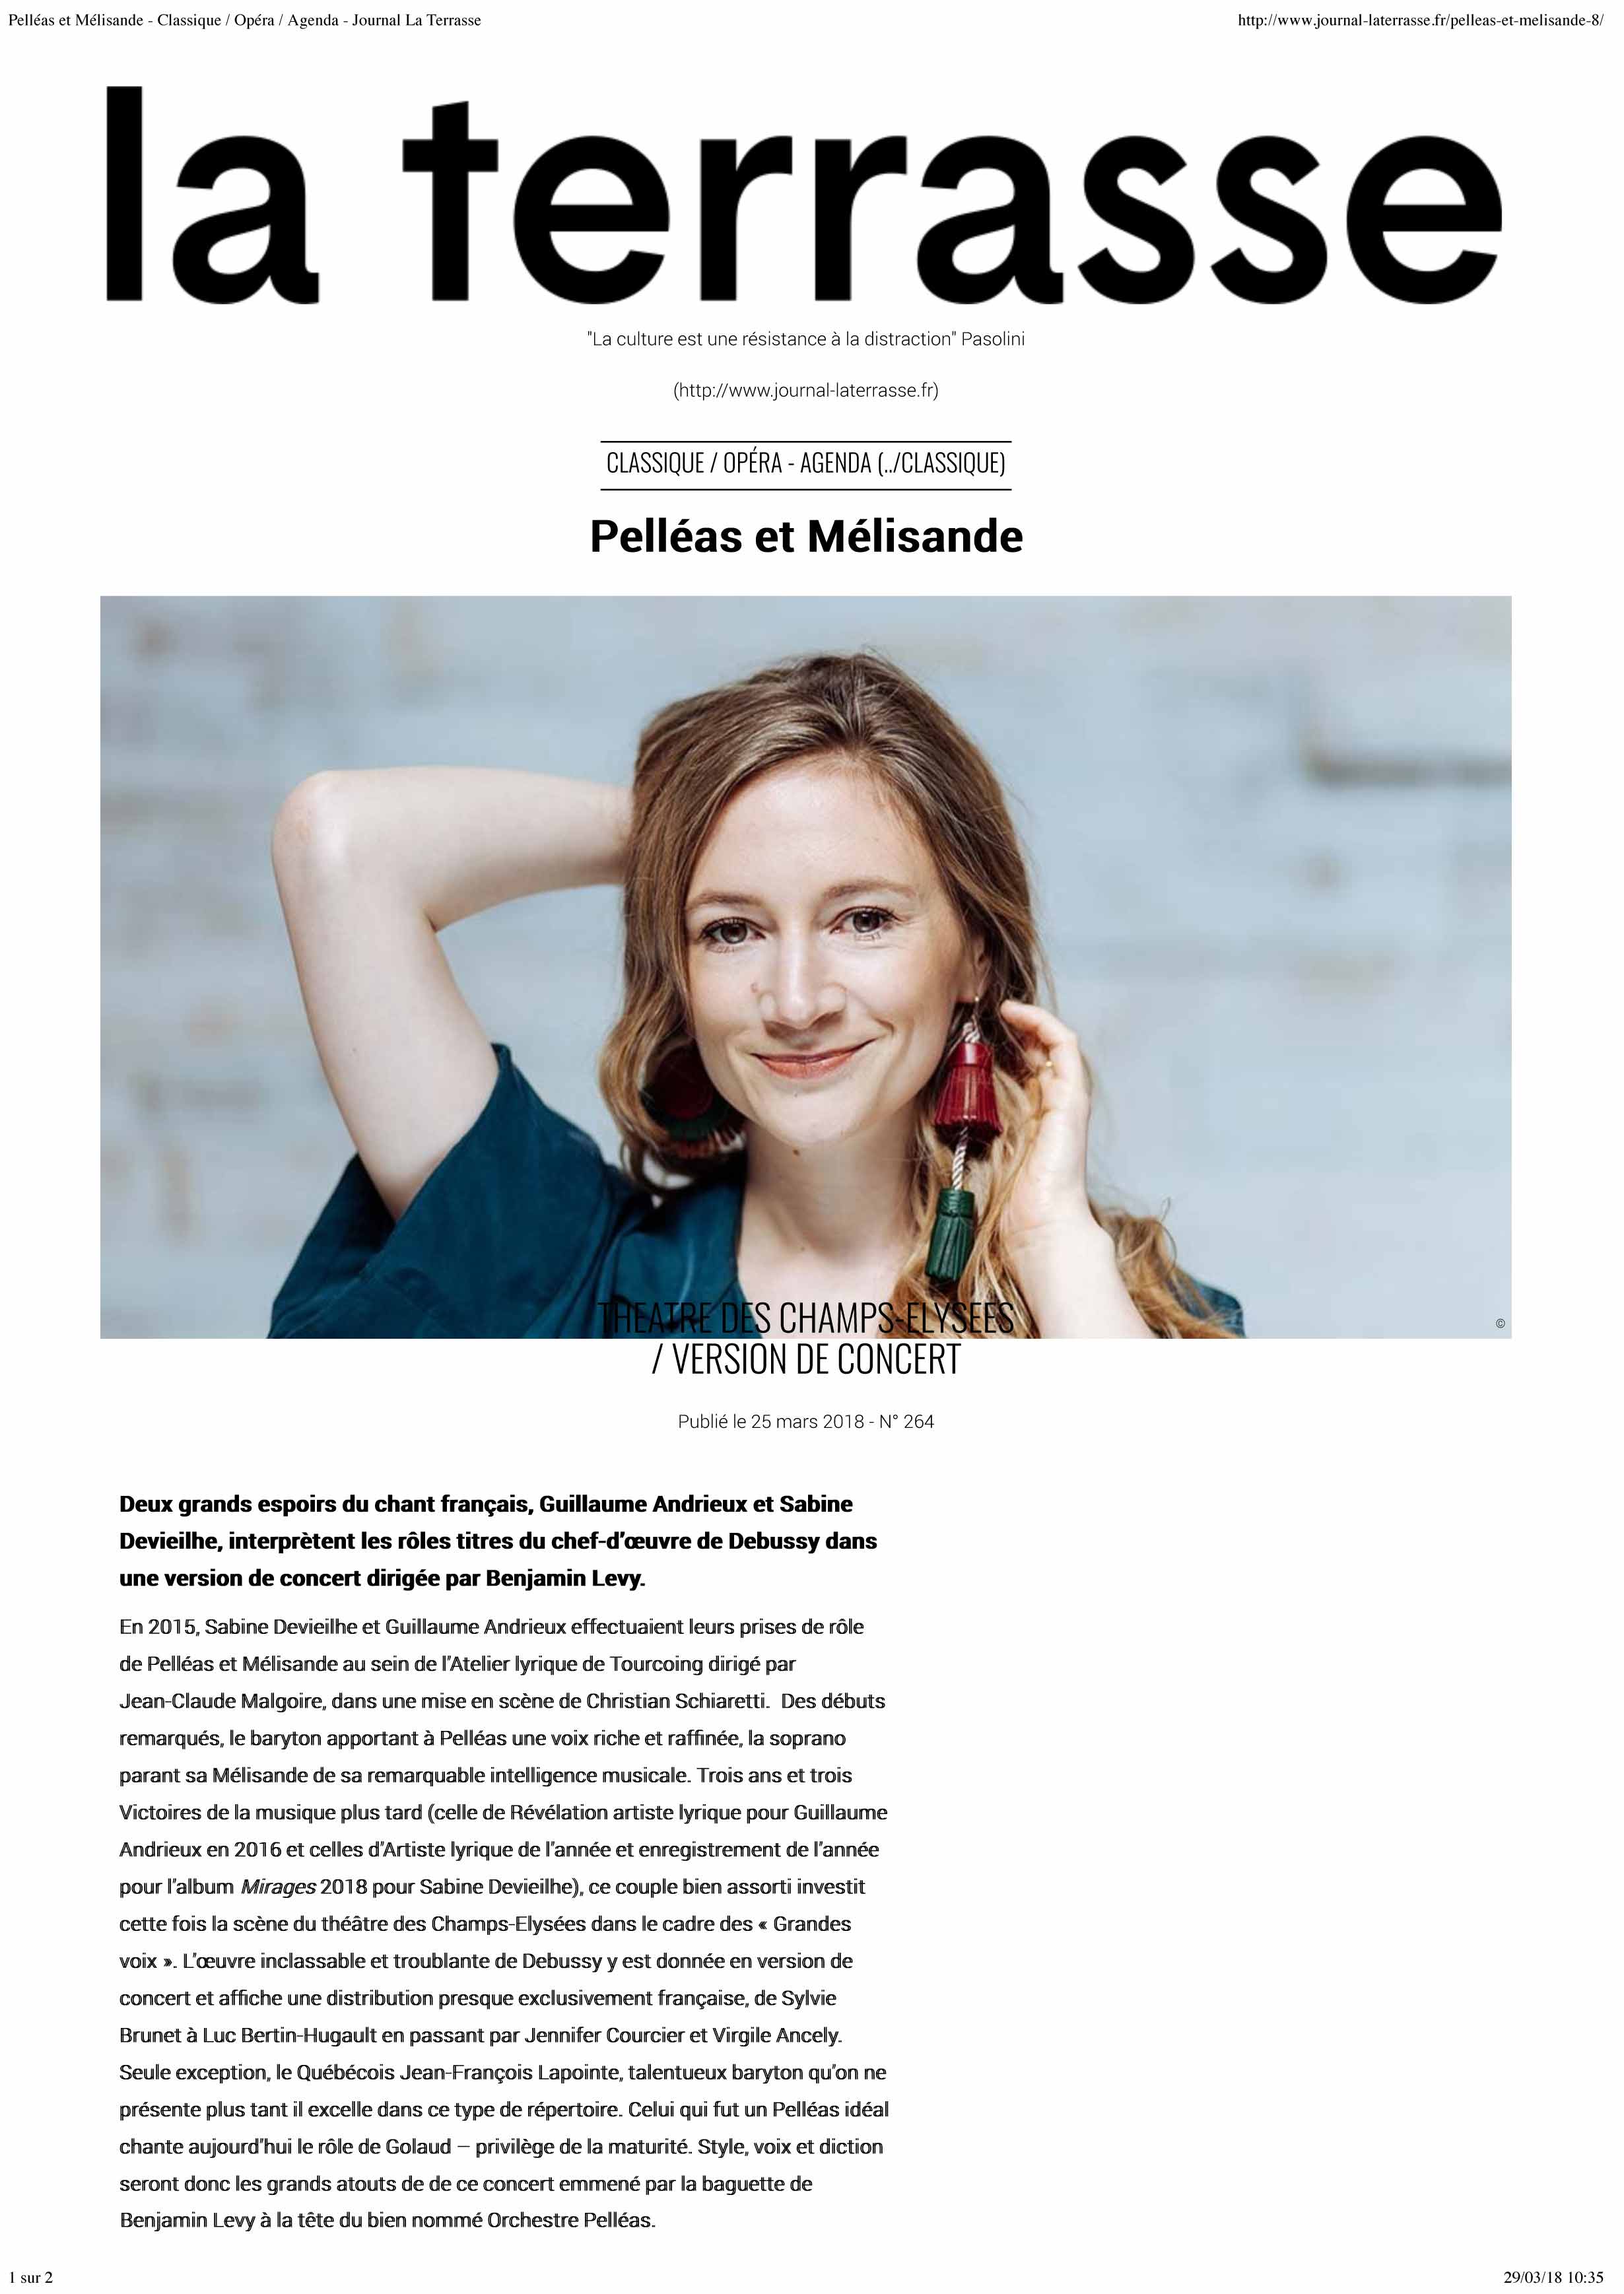 Annonce de la version de concert de Pelléas et Mélisande dans le numéro d'avril 2018 de La Terrasse